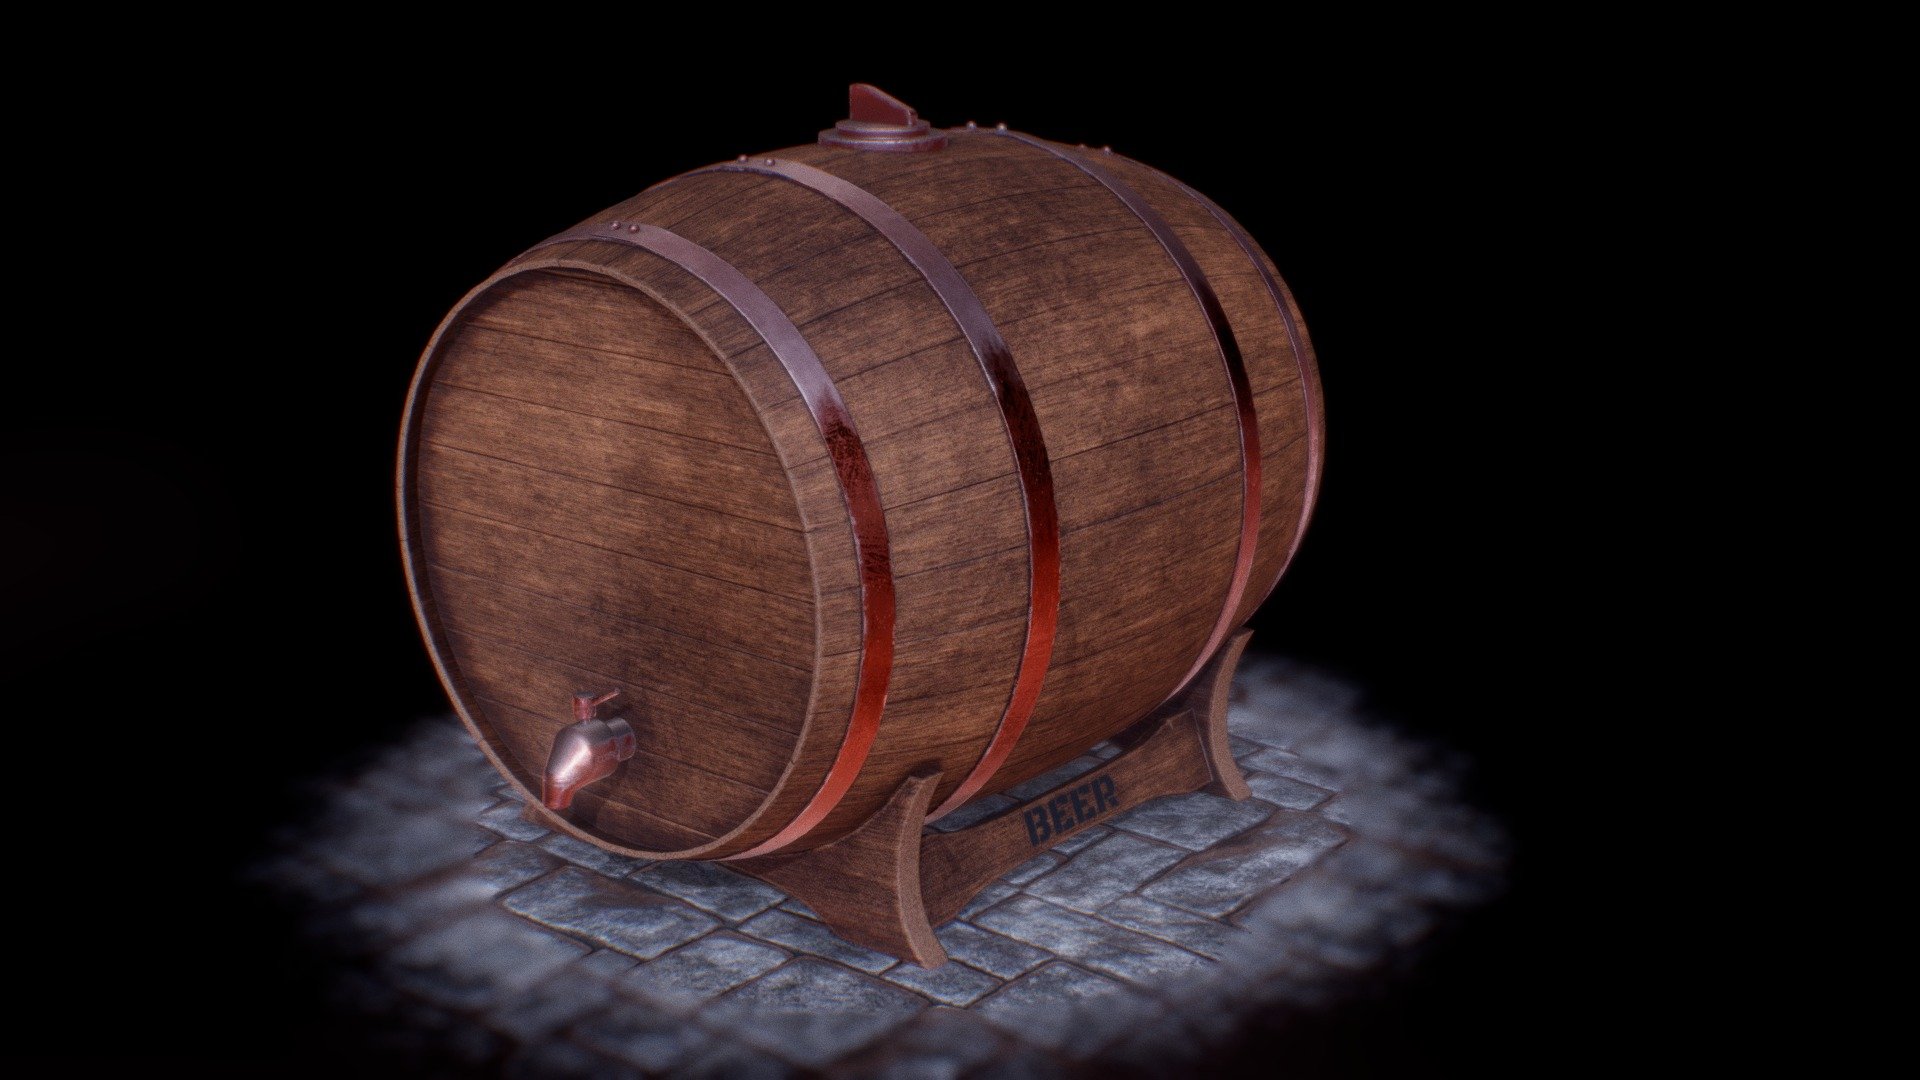 Beer Barrel